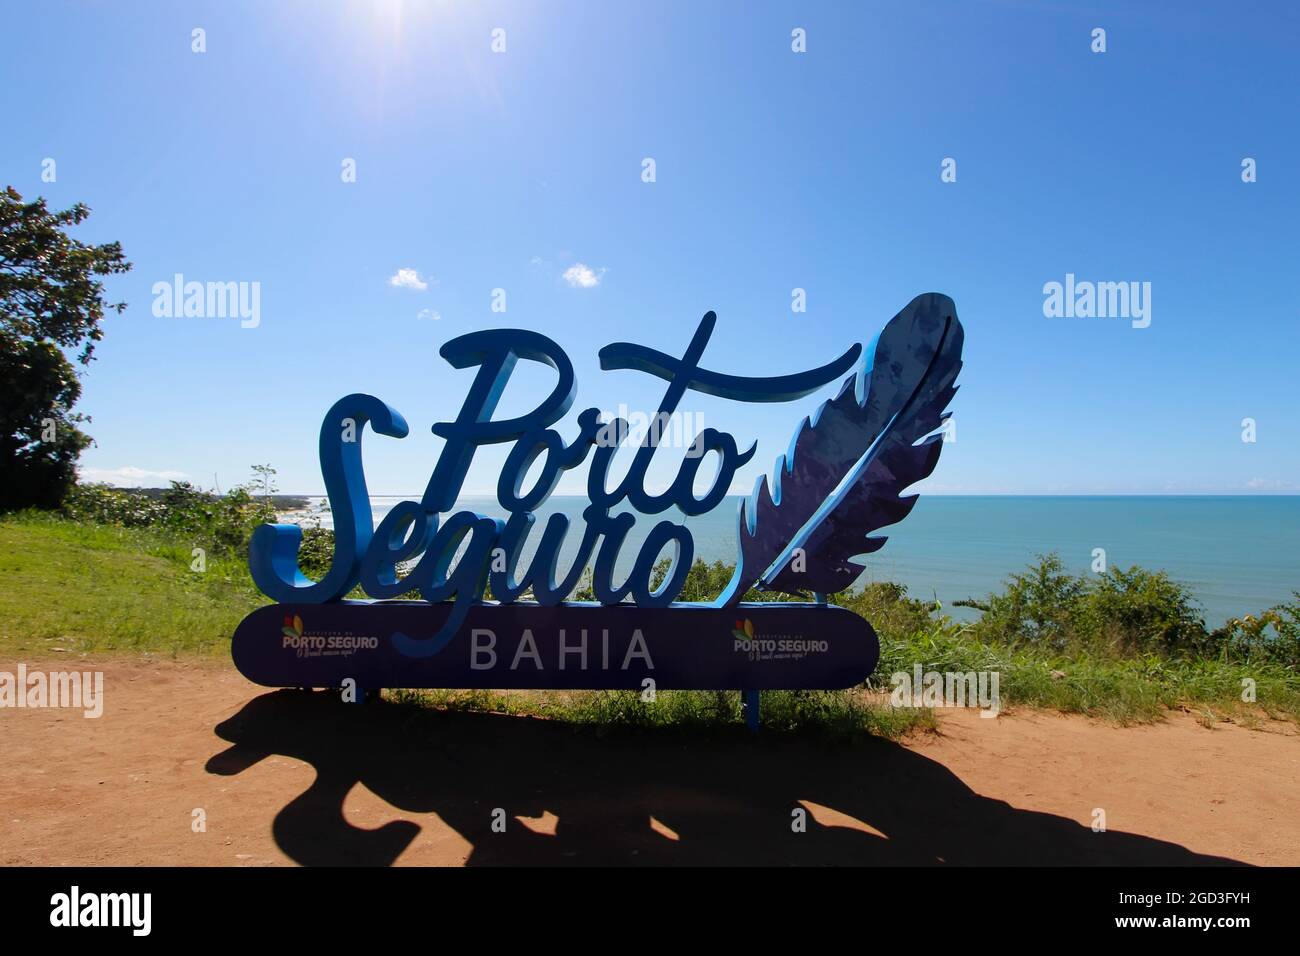 Porto Seguro, Bahia, Brazil - July 18, 2021: arriving signage tourism board with Porto Seguro inscription in large, colorful letters in the historic c Stock Photo